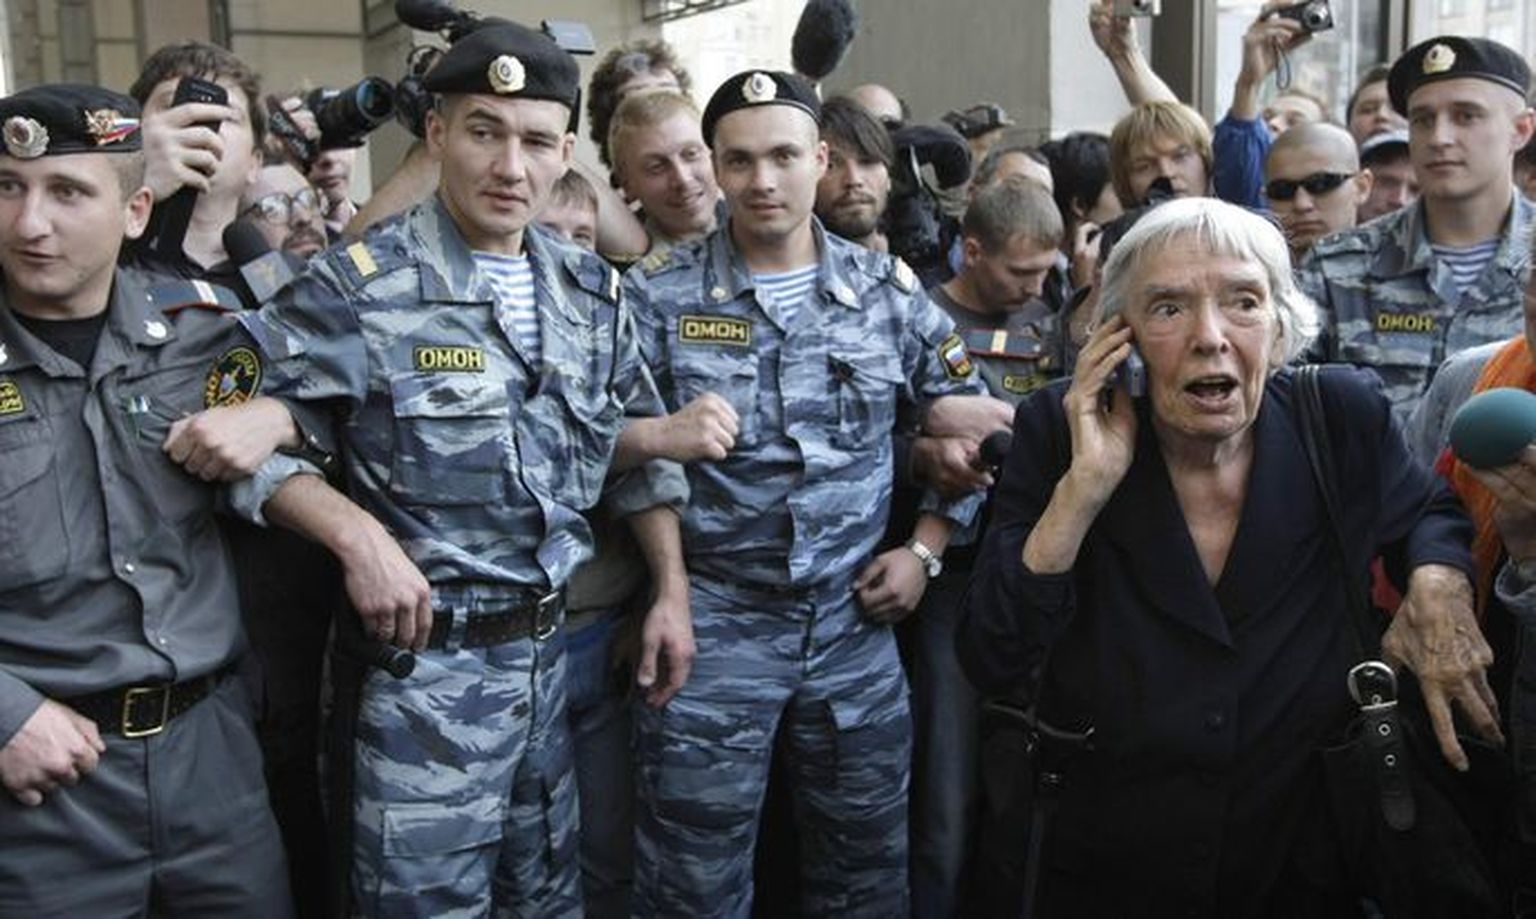 В 2012 году ОМОН задержал тогда 82-летнюю правозащитницу Людмилу Алексееву во время акции протеста против властей и доставил в отделение. Это вызывало недовольство по всему миру.